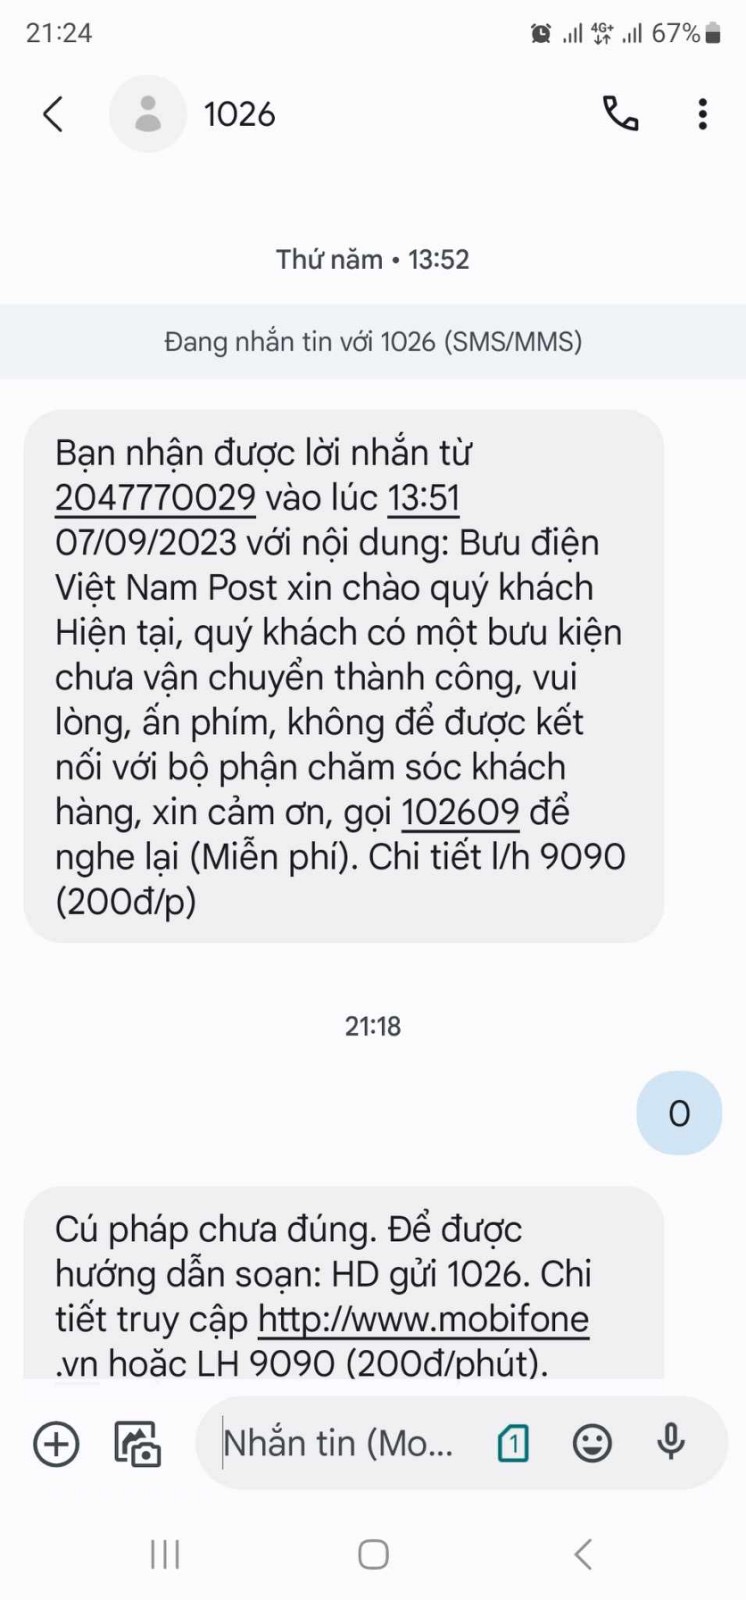 Cảnh báo giả mạo Vietnam Post gọi điện thông báo có bưu kiện chưa vận chuyển thành công - Ảnh 1.